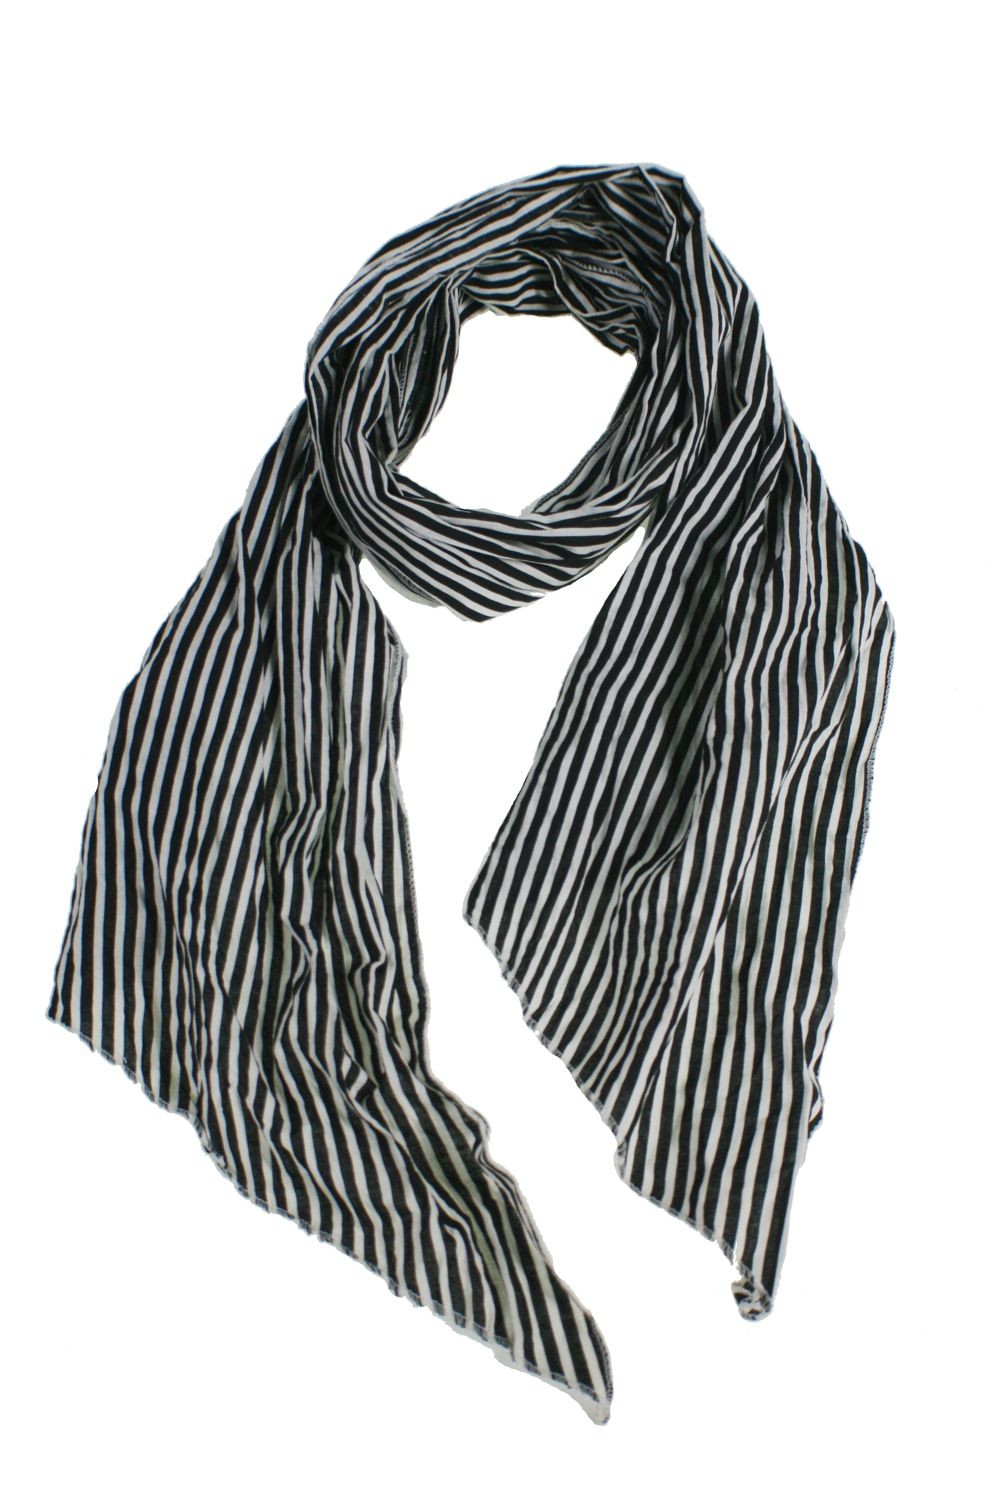 Pañuelo foulard estilo rayas blanco y negro moda